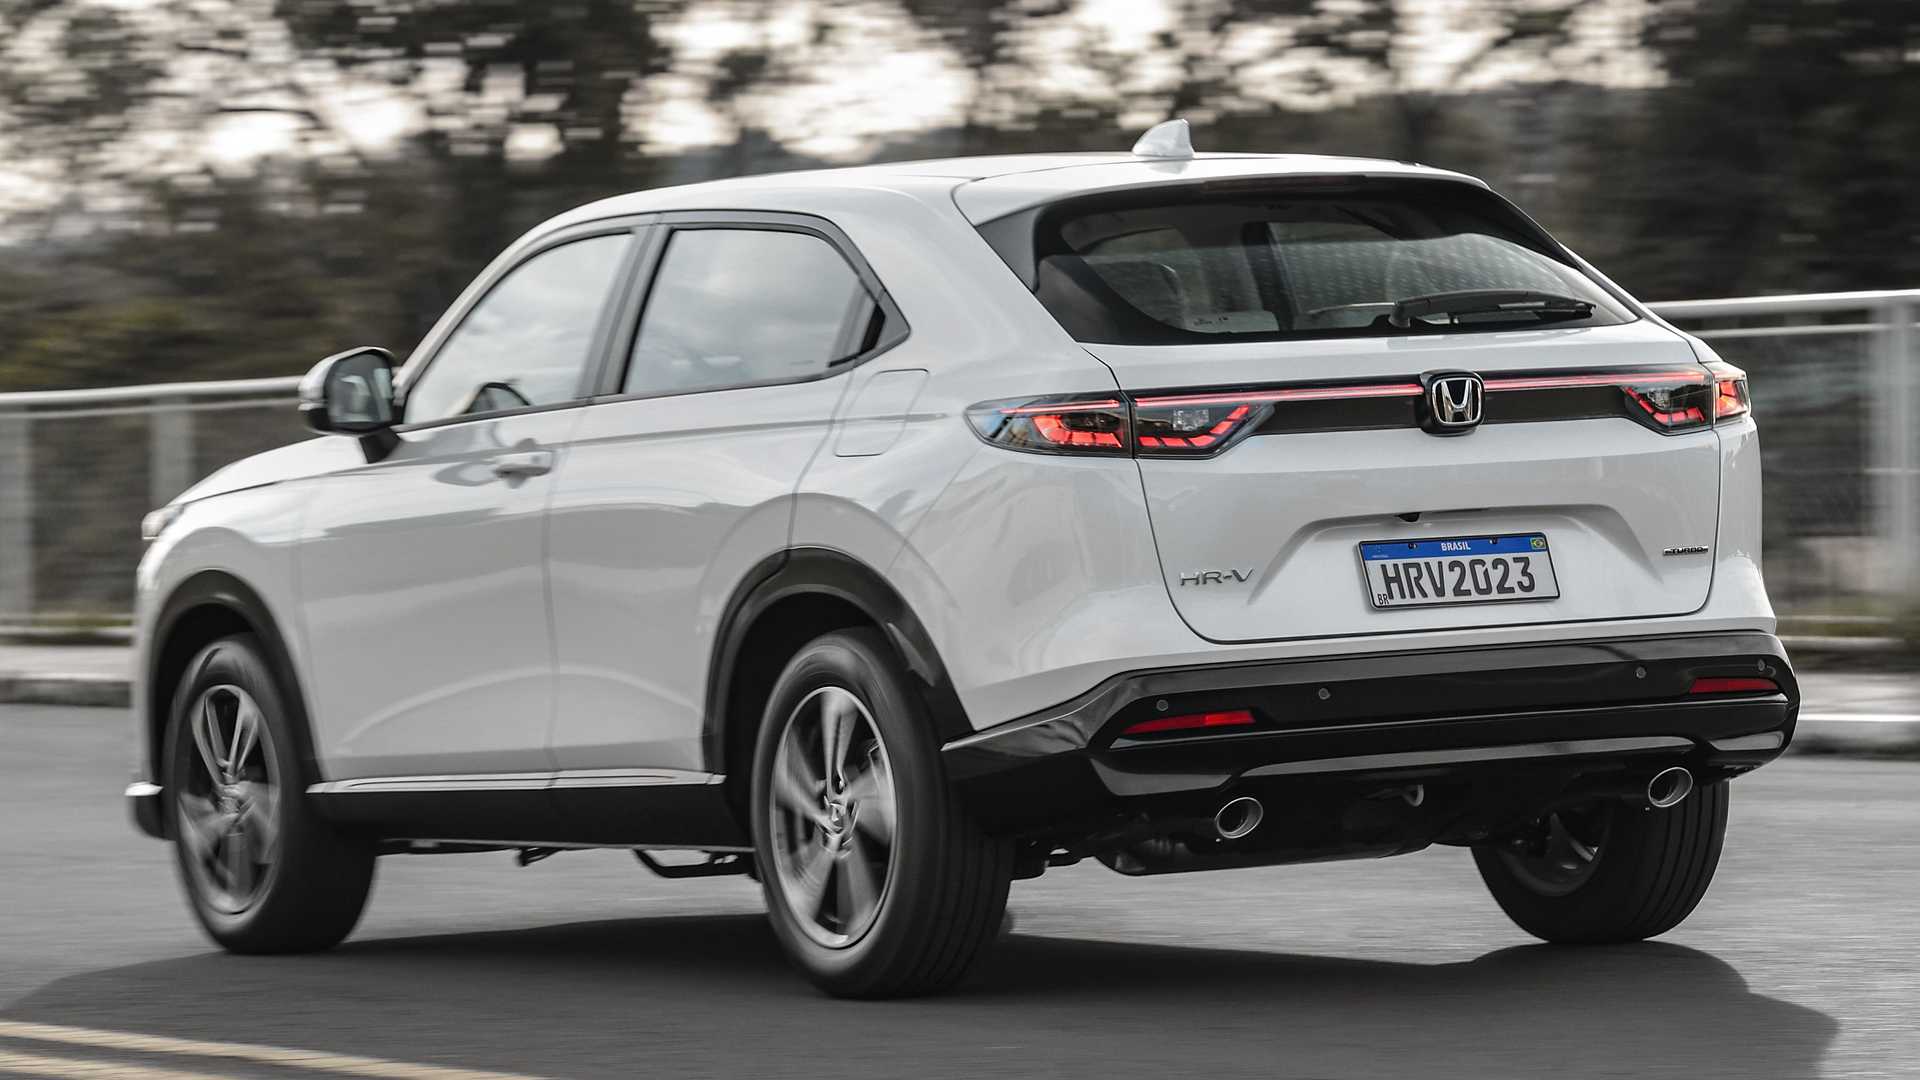 Preço oficial do Honda HRV 2023 começa em R 142.500, veja todas as versões